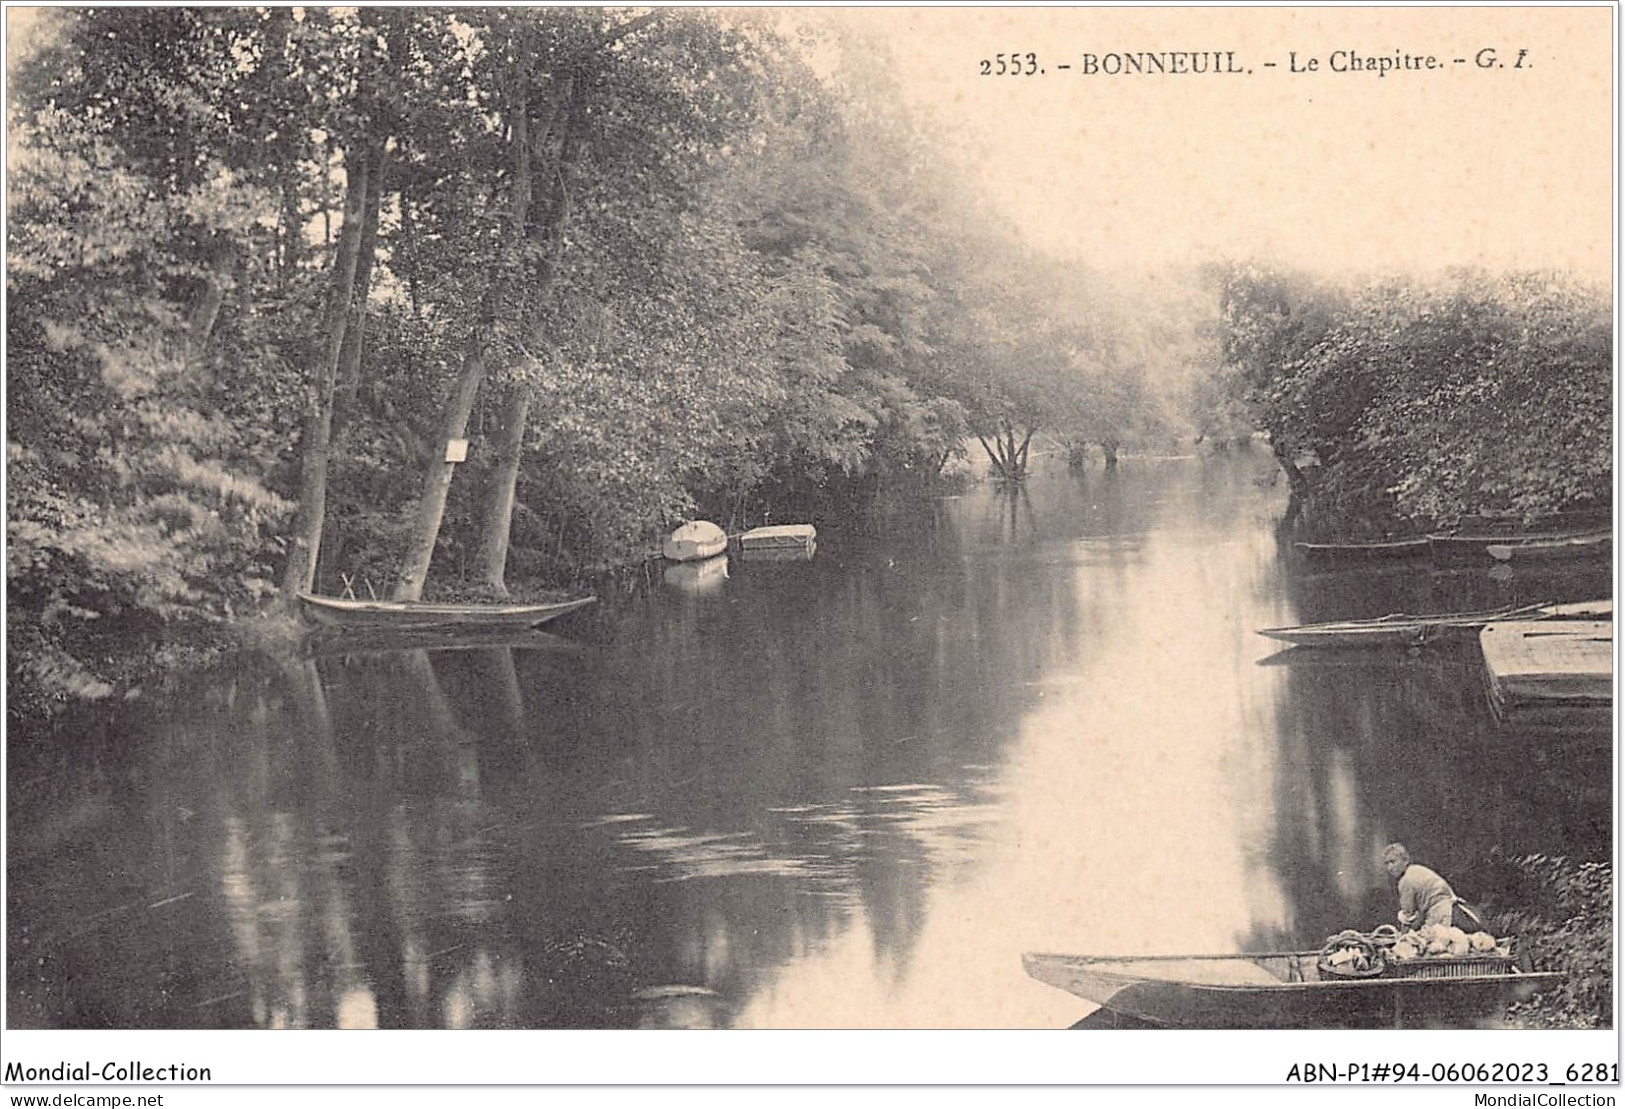 ABNP1-94-0069 - BONNEUIL - Le Chapitre - Bonneuil Sur Marne